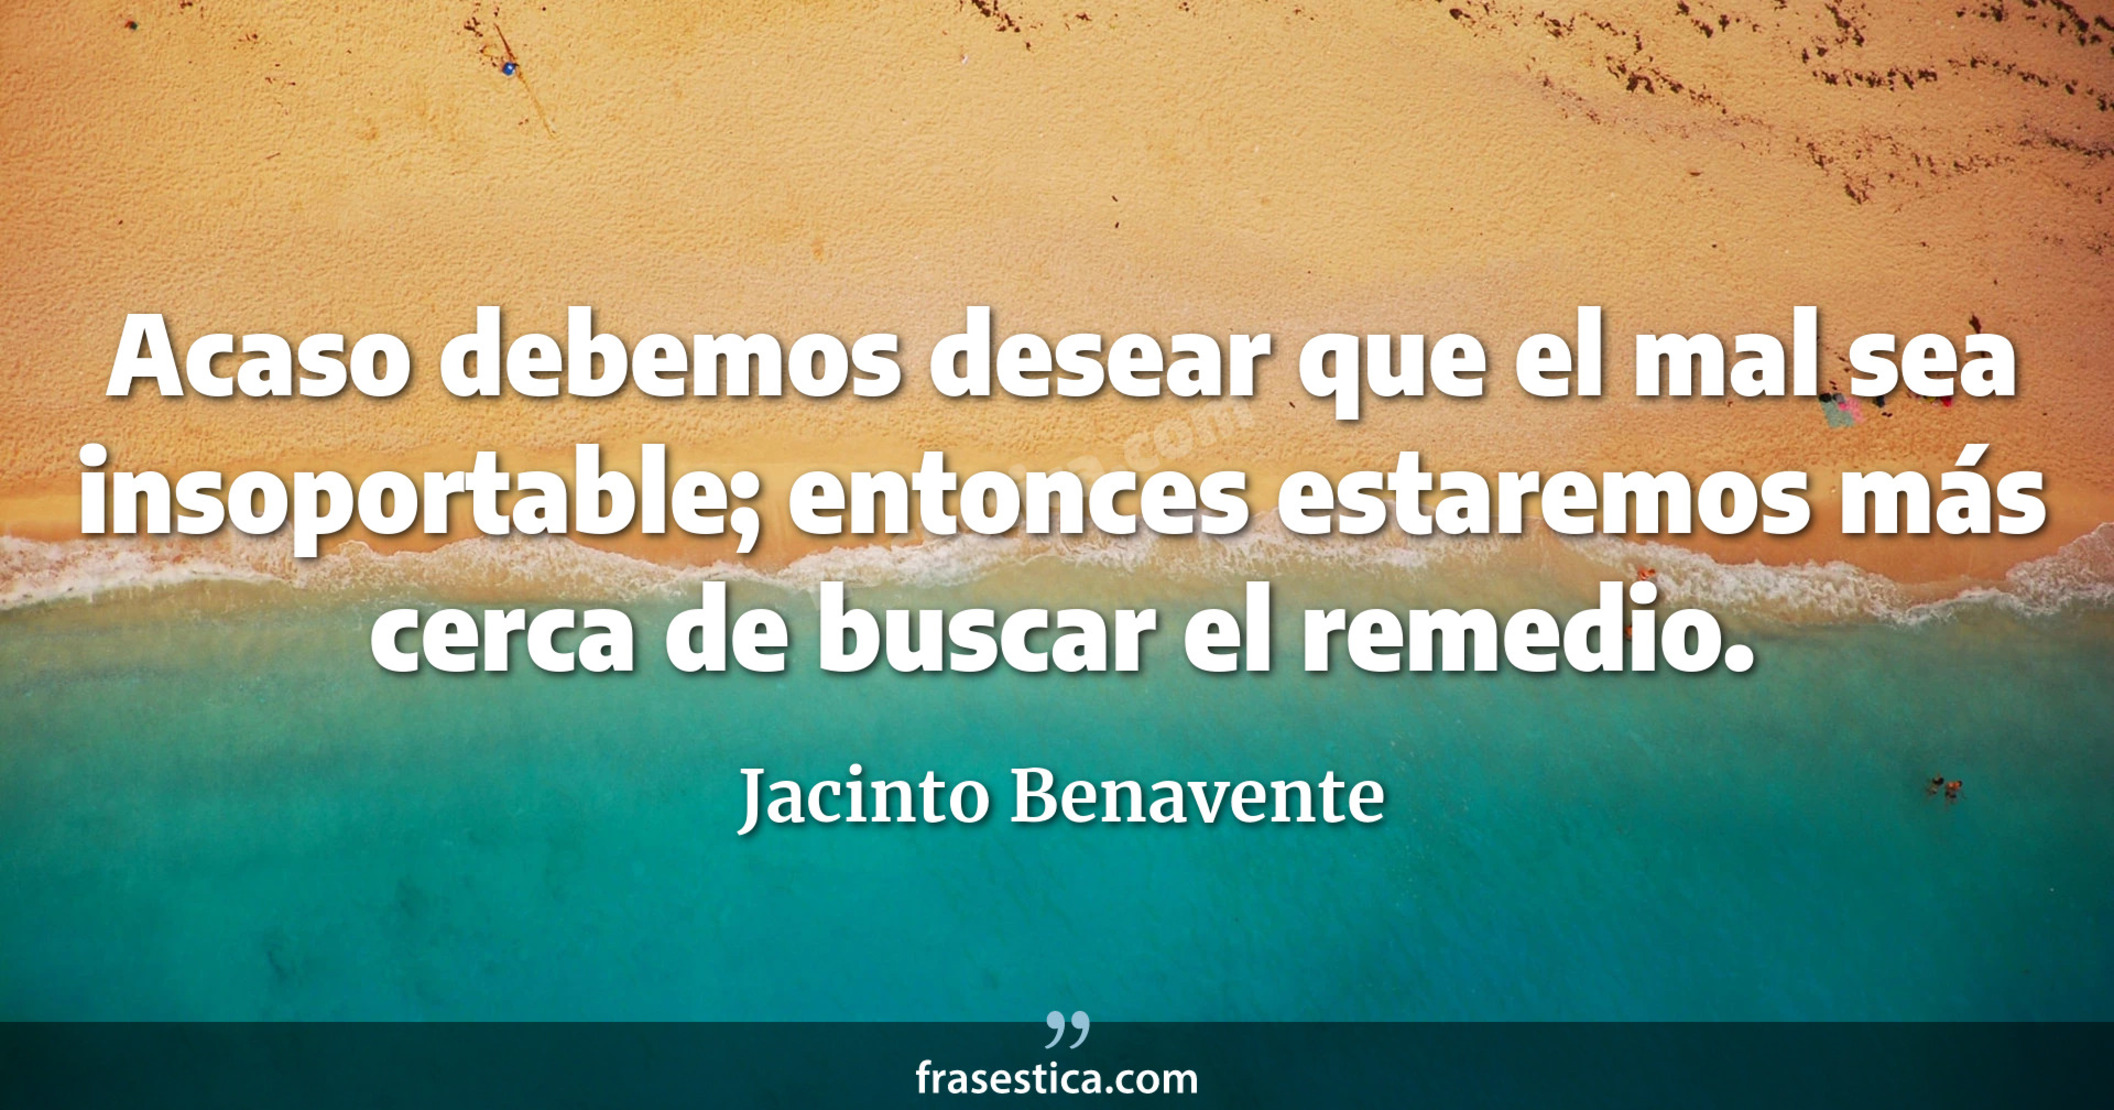 Acaso debemos desear que el mal sea insoportable; entonces estaremos más cerca de buscar el remedio. - Jacinto Benavente